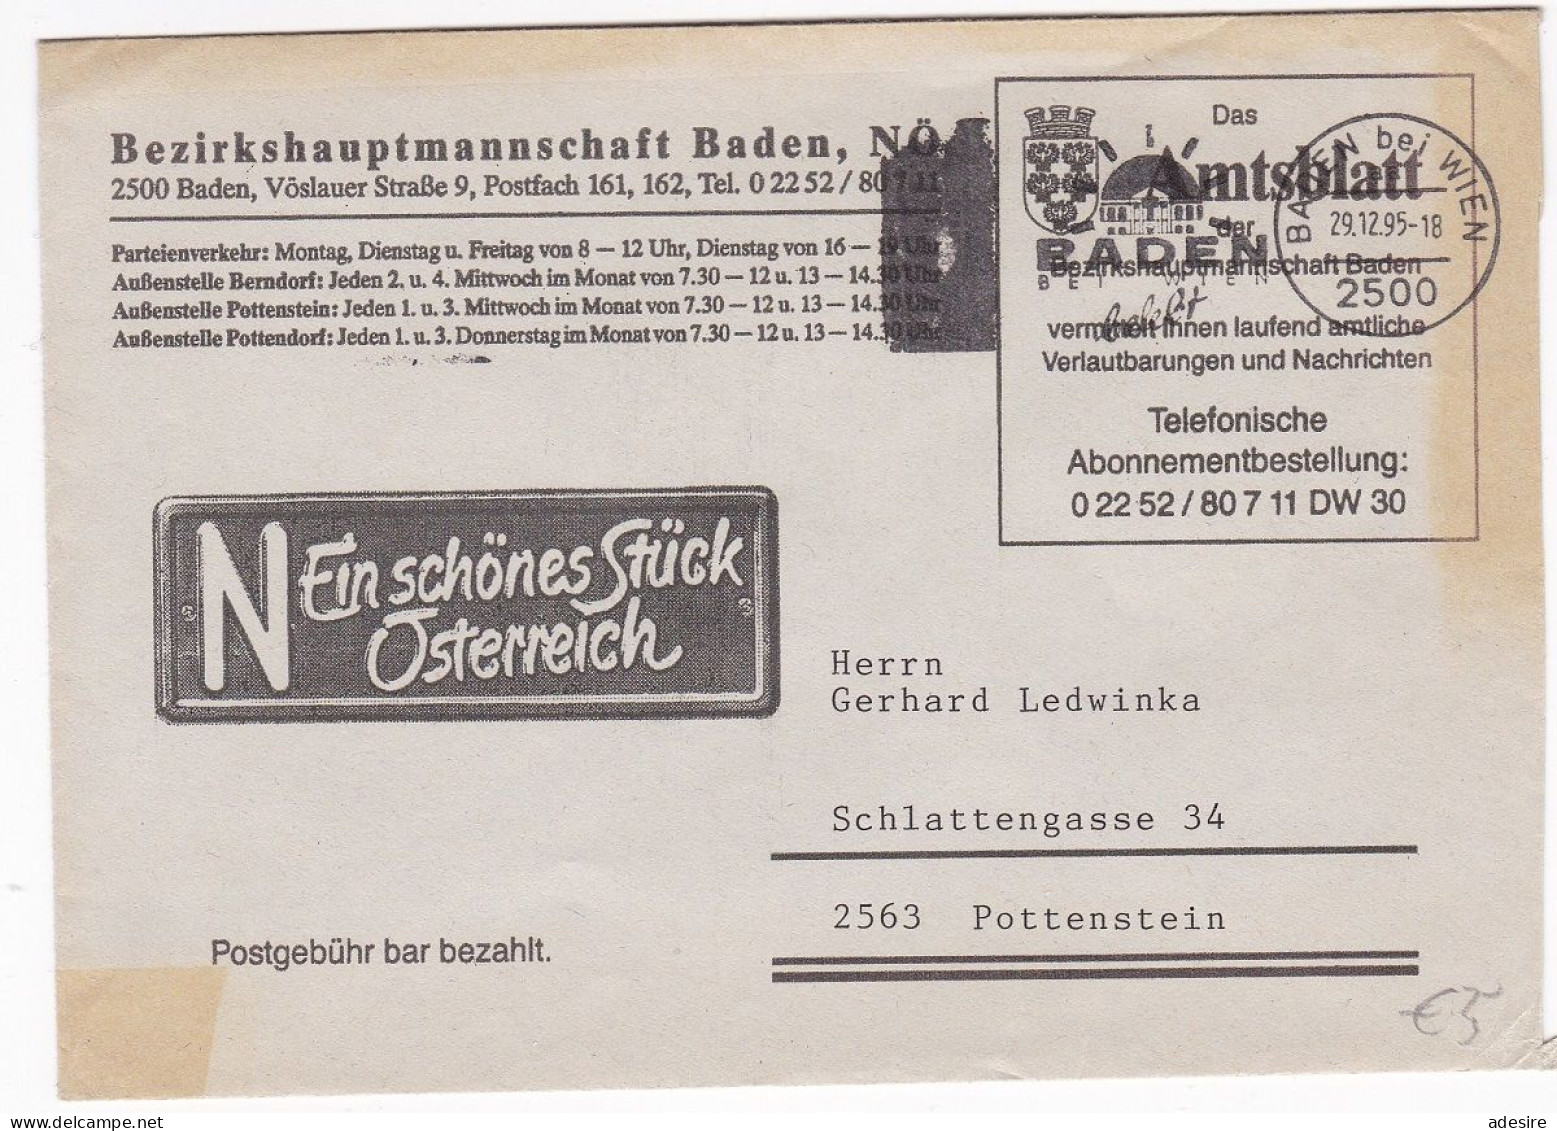 ÖSTERREICH - Firmenbrief Bezirkshauptmannschaft Baden NÖ - Das Amtsblatt Baden - Covers